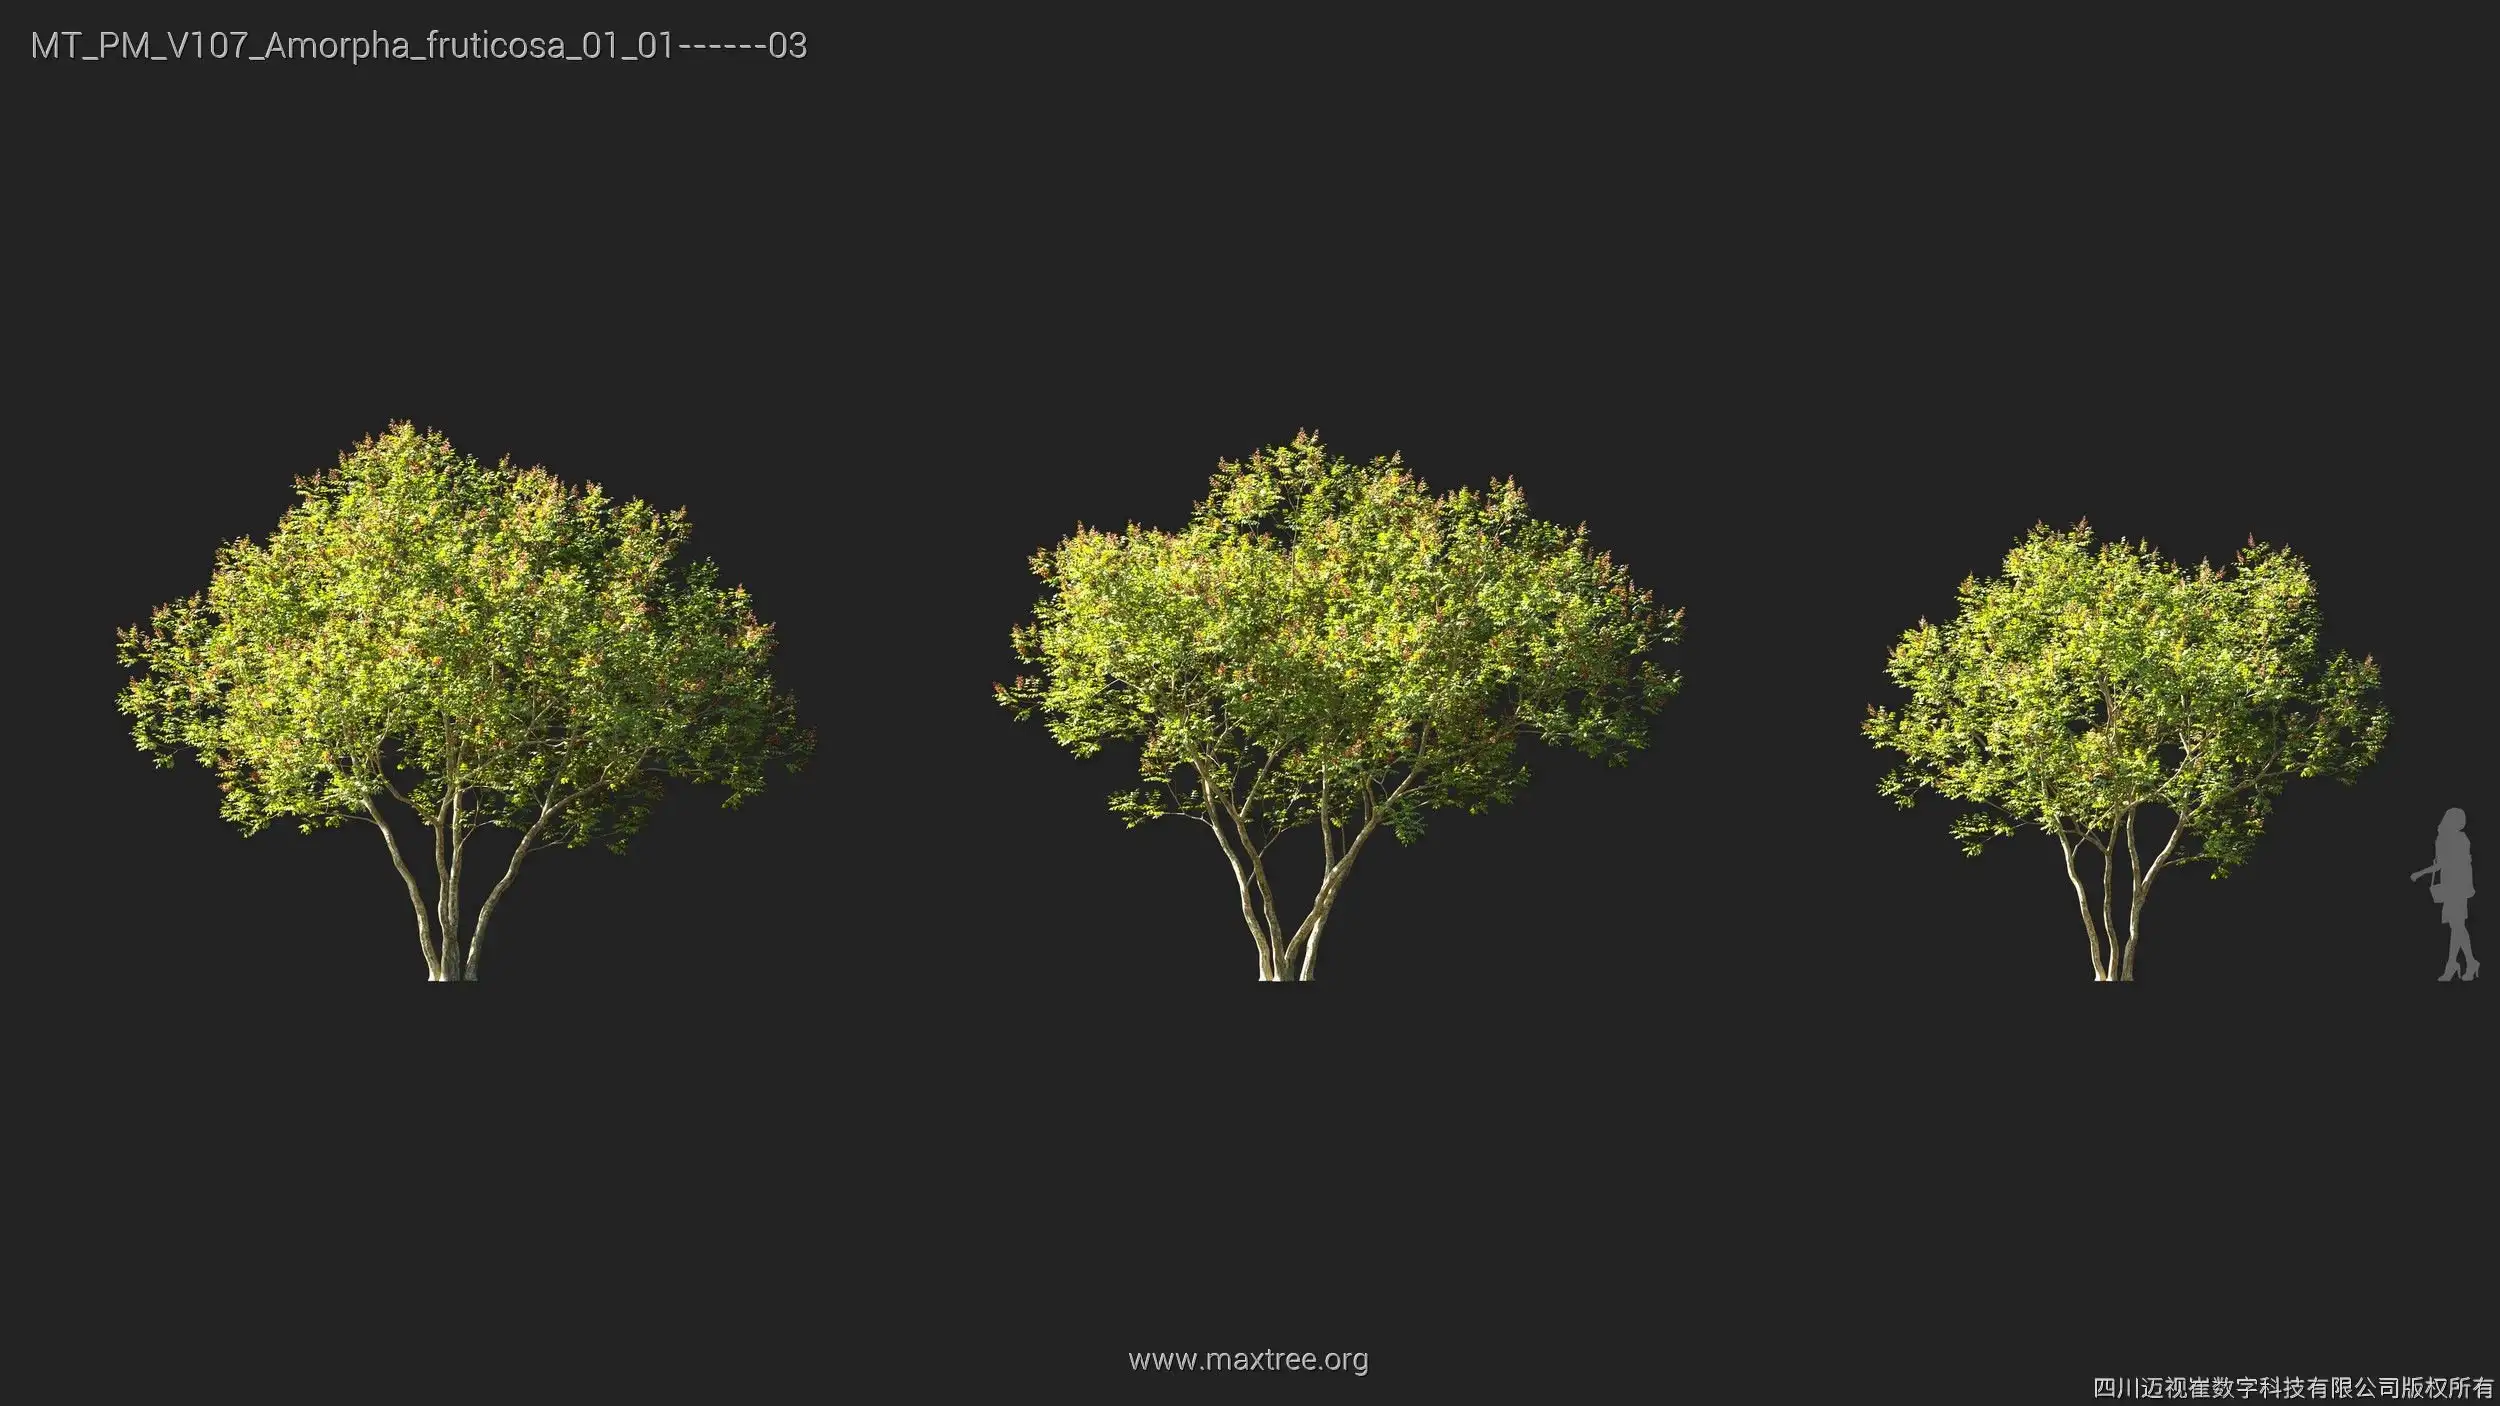 دانلود 72 مدل سه بعدی درخت - 2